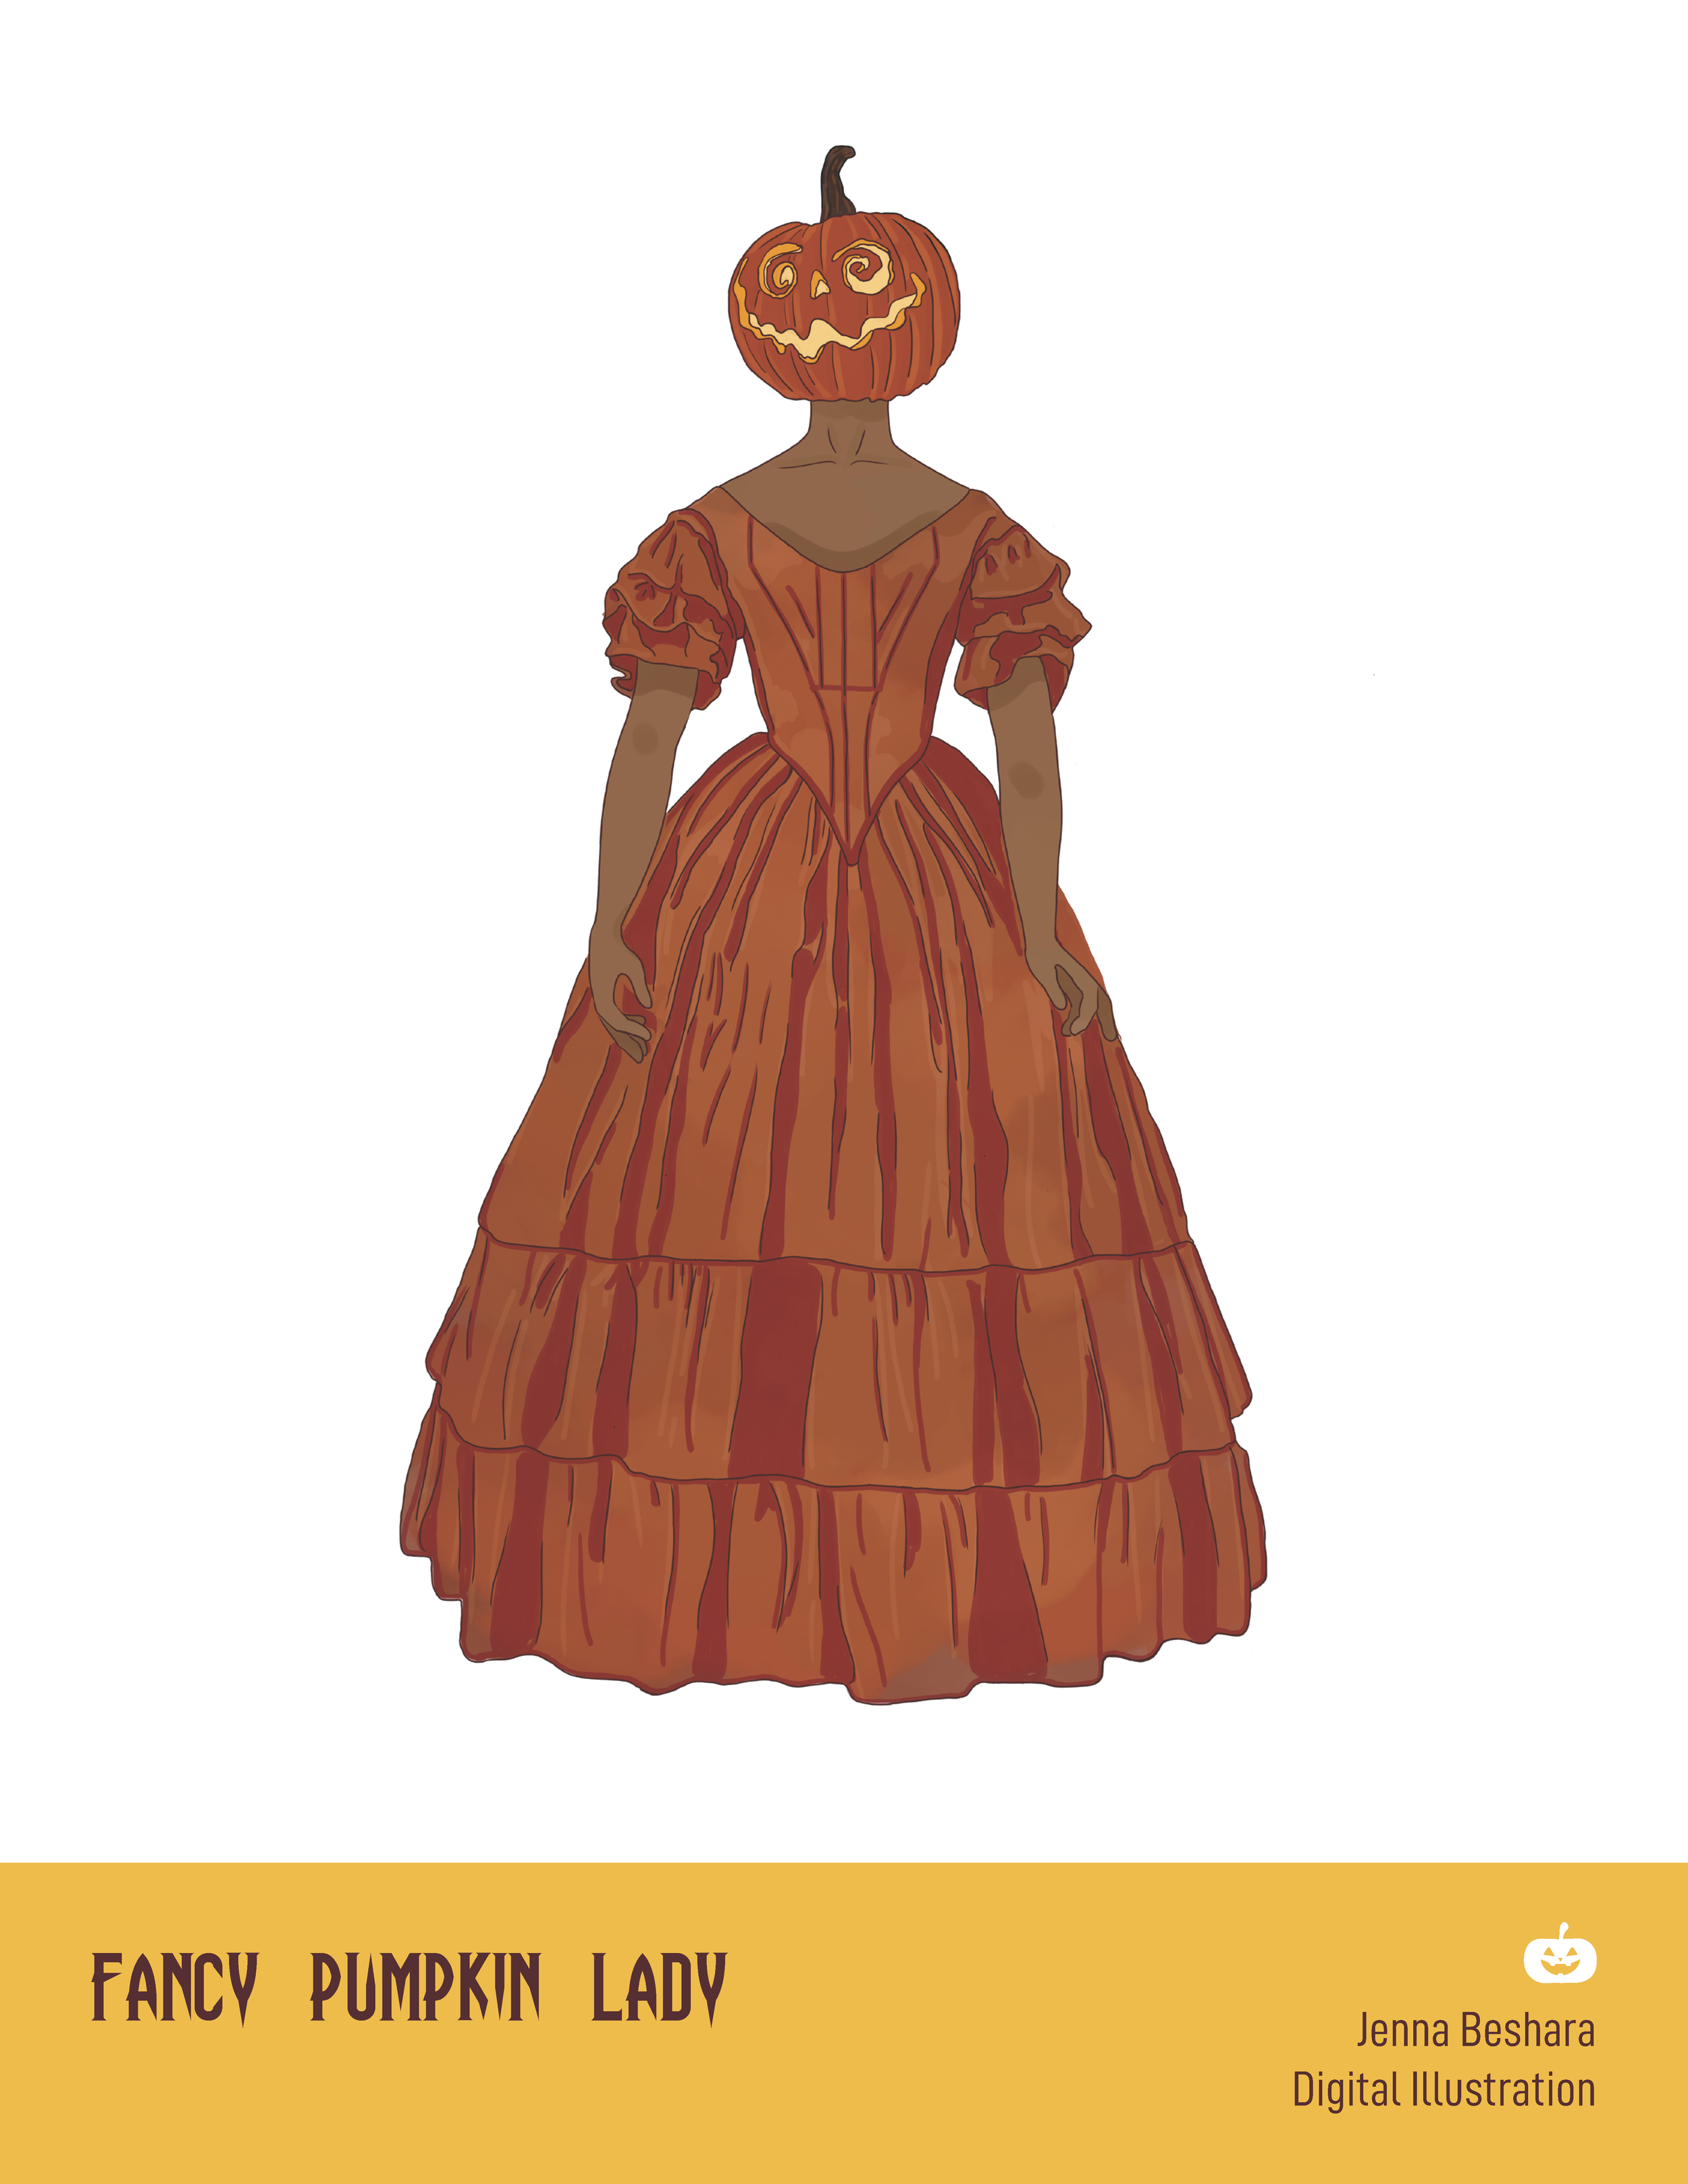 Fancy Pumpkin Lady by Jenna Beshara